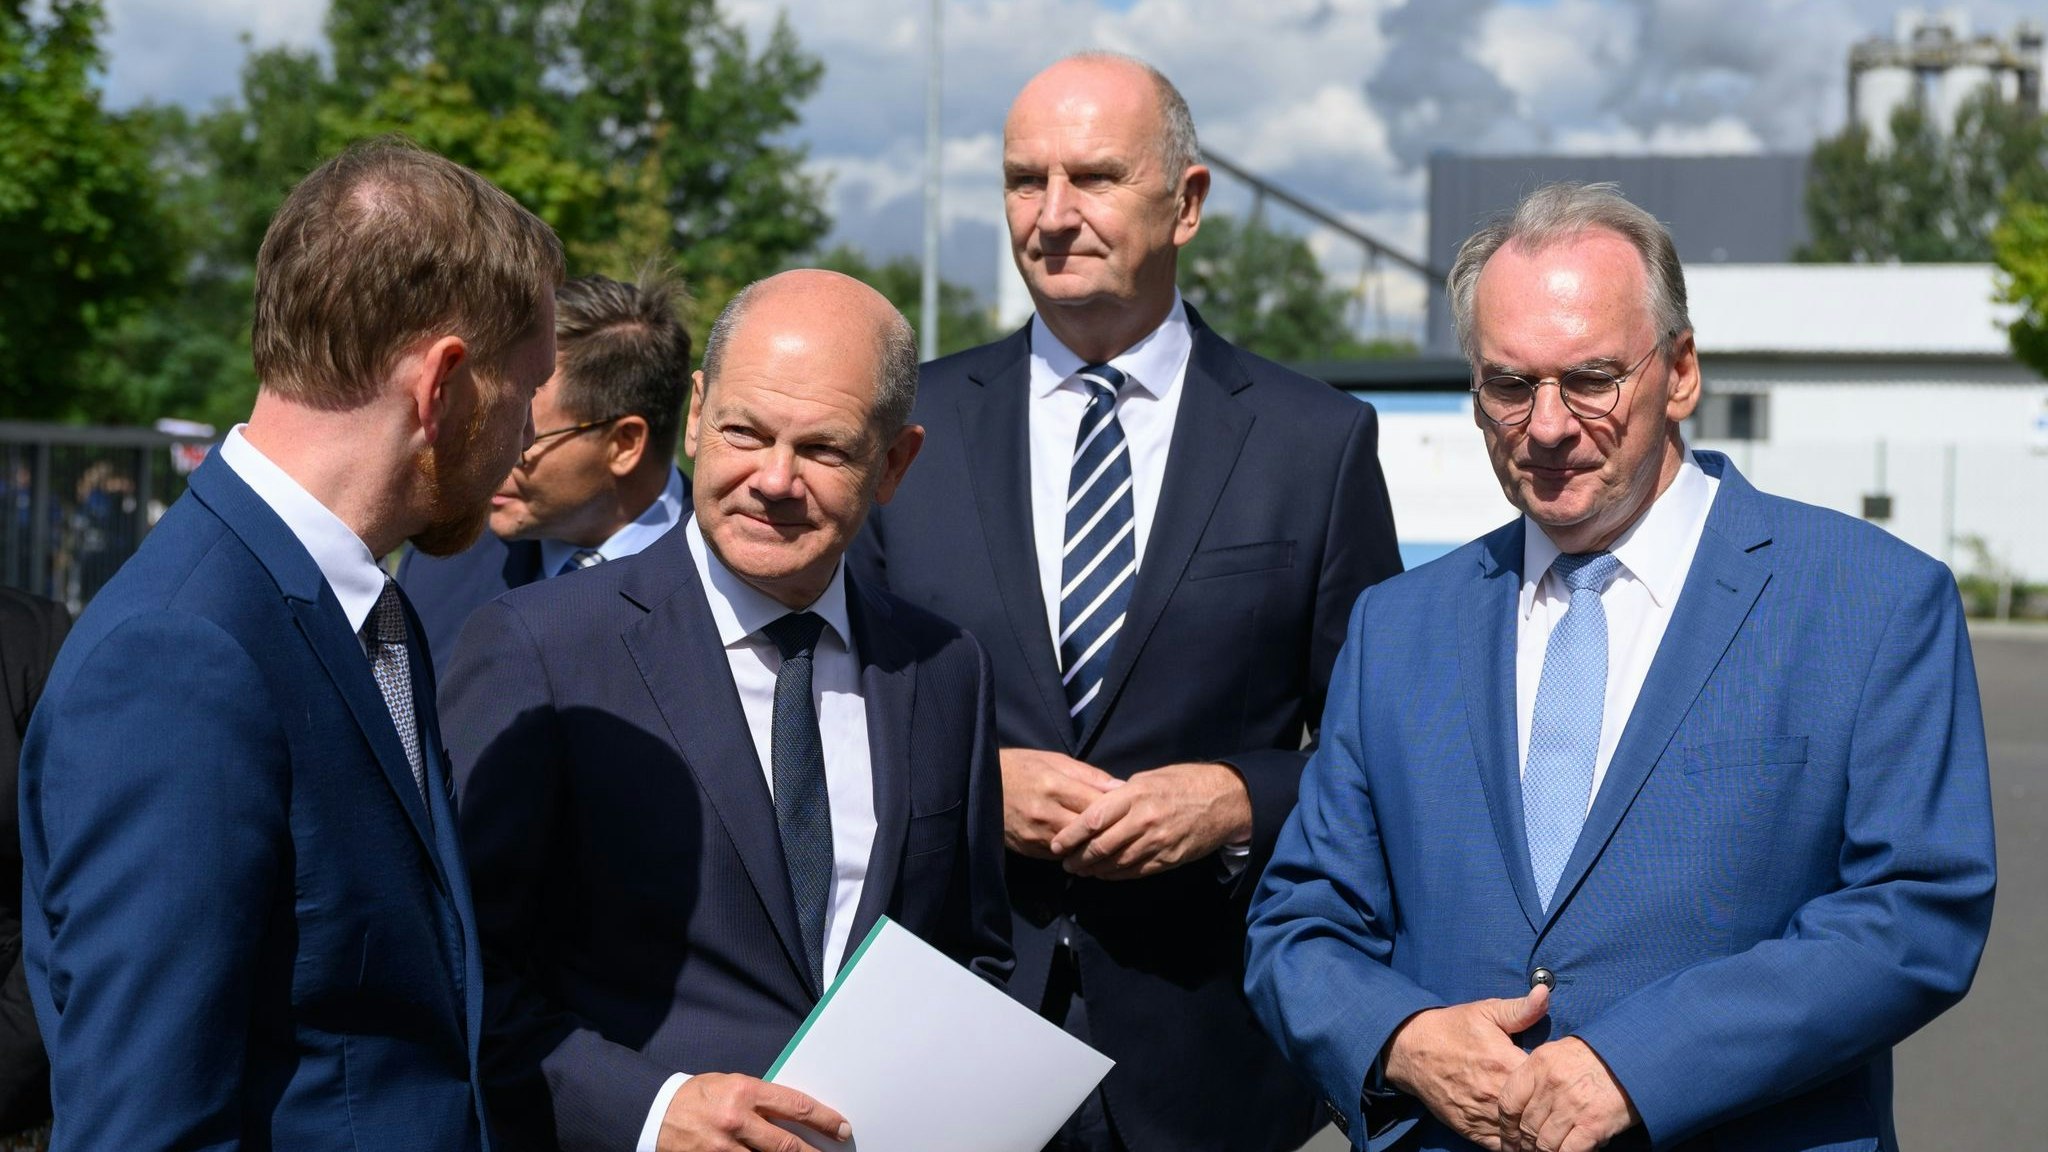 Bundeskanzler Olaf Scholz (2.v.l) mit den Ministerpräsidenten Michael Kretschmer (Sachsen, l.), Dietmar Woidke (Brandenburg, 2.v.r.) und Reiner Haseloff (Sachsen-Anhalt). Foto: dpa/Michael